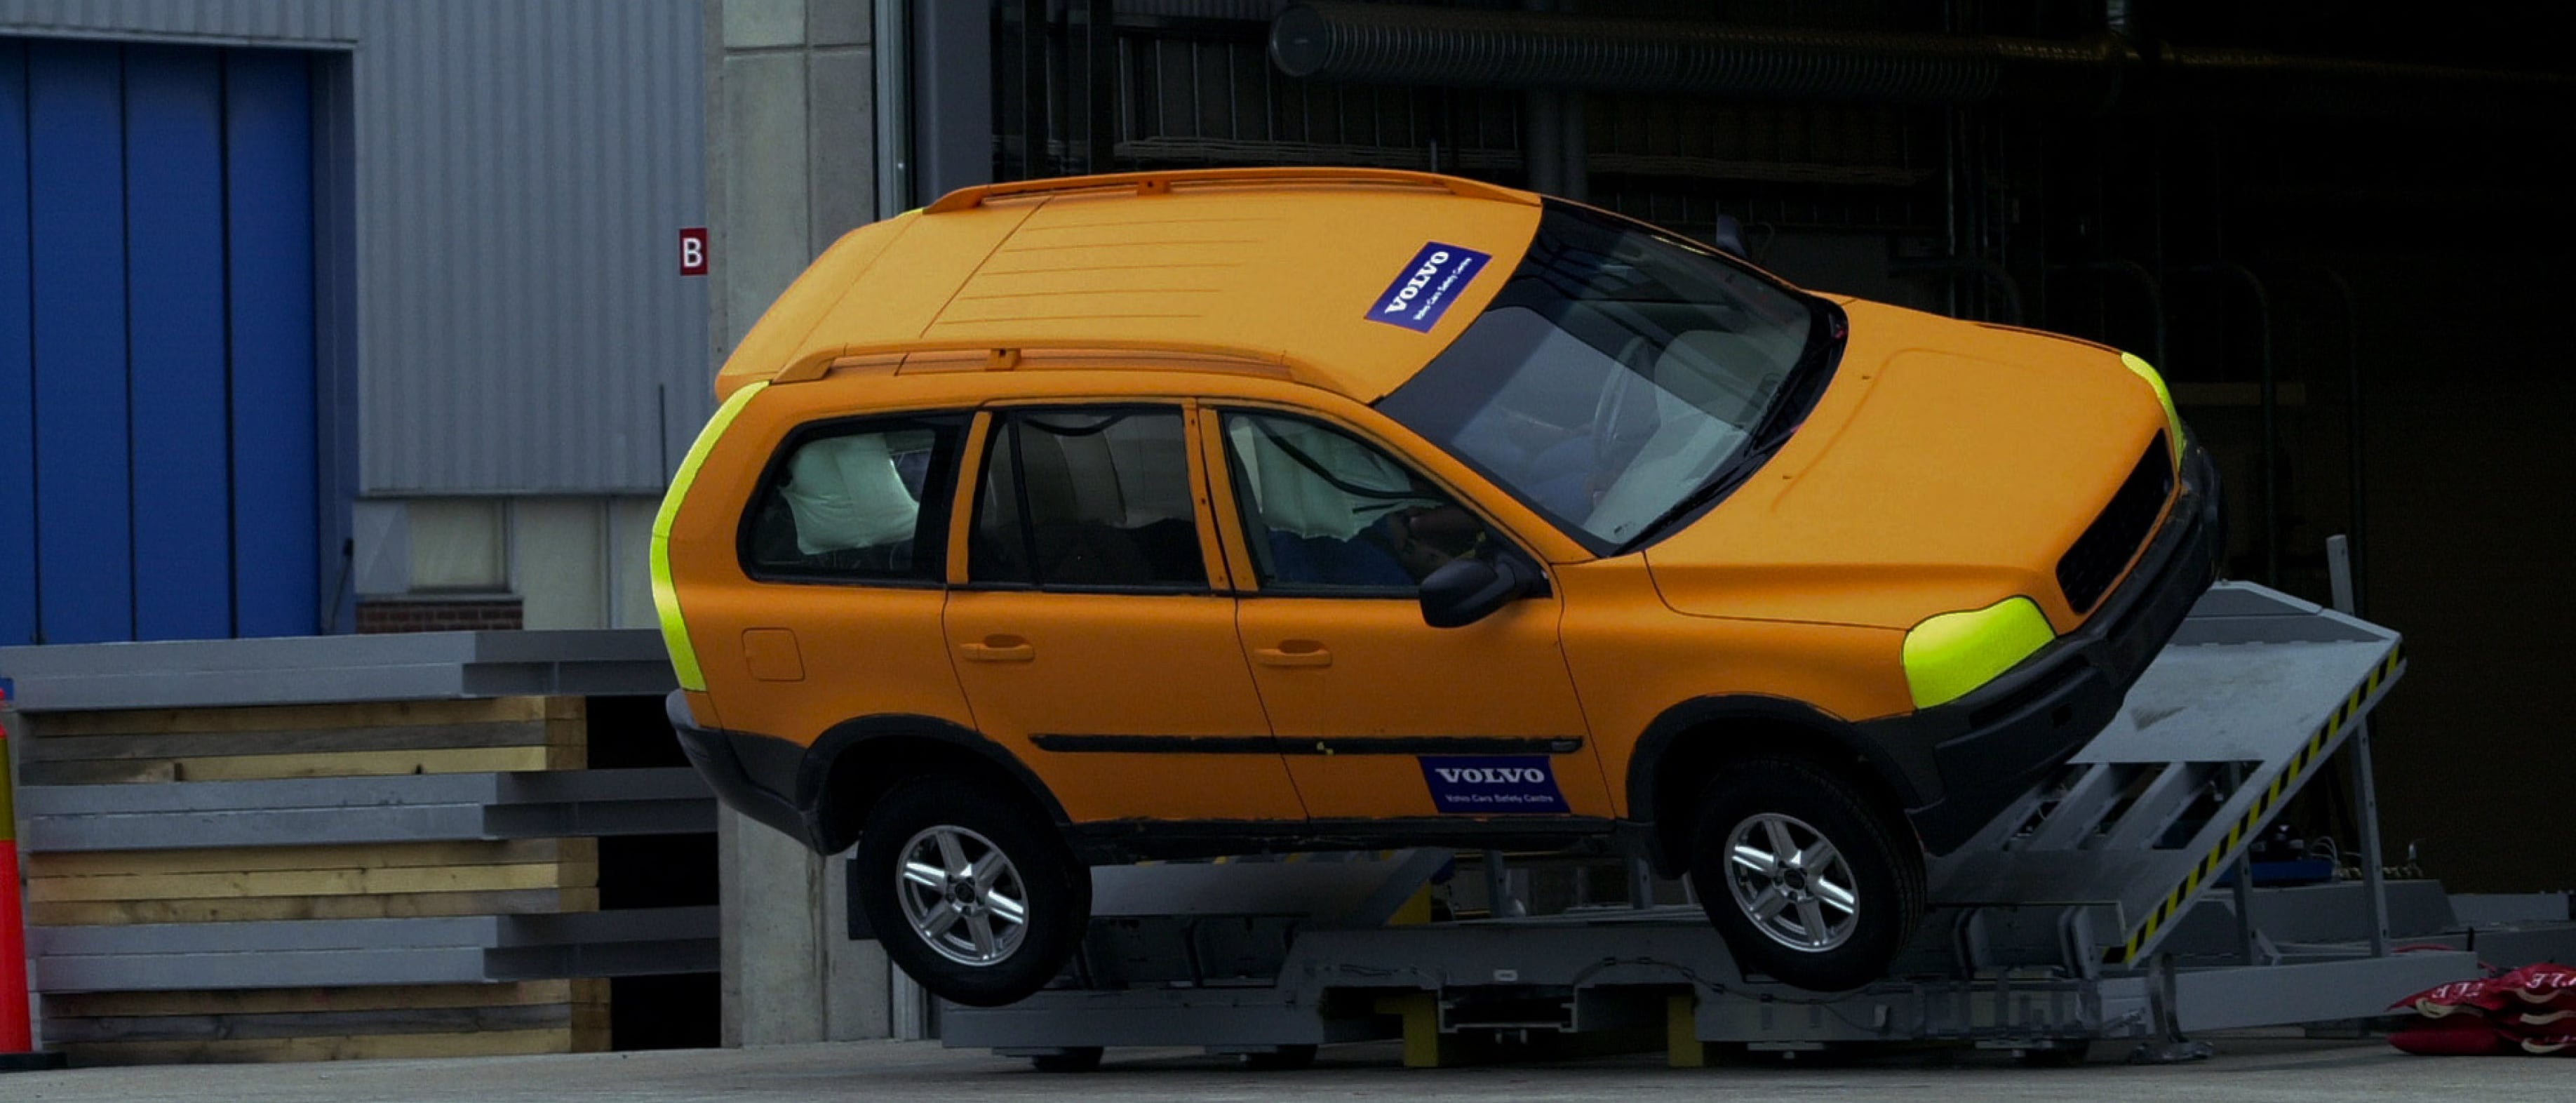 一辆沃尔沃 SUV 经受翻车测试，以此检测车辆电子稳定控制系统和车身结构的安全性。